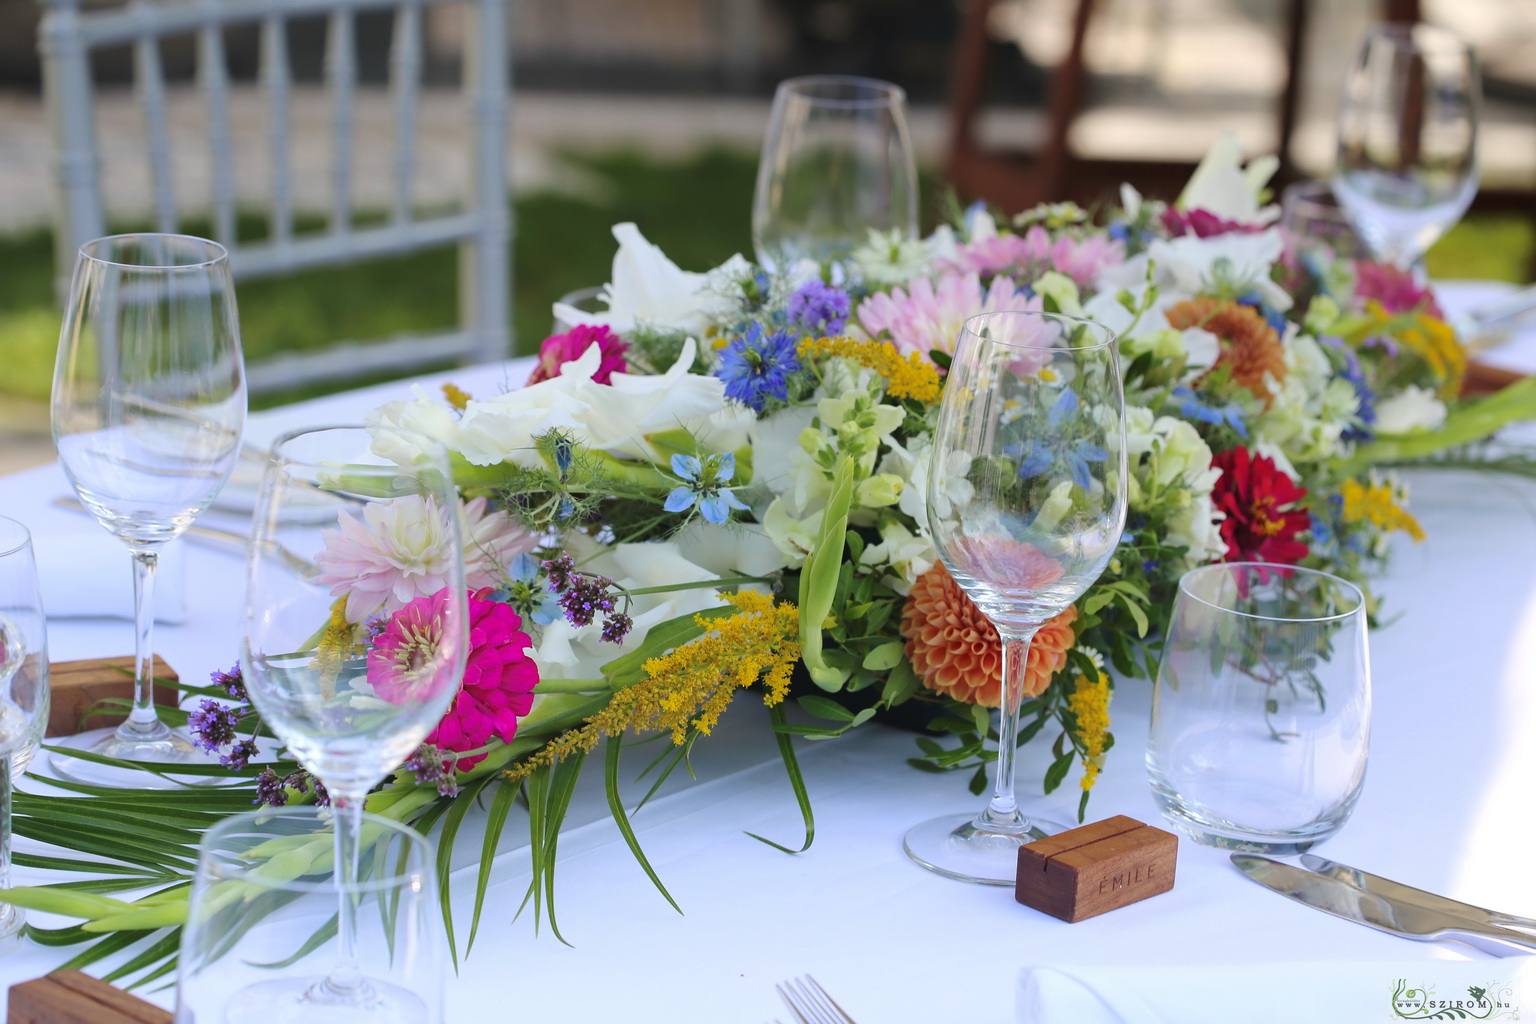 Hosszúkás asztaldísz (dália, zinnia, kardvirág, mezei virágok, fehér, rózsaszín, kék) Émile étterem